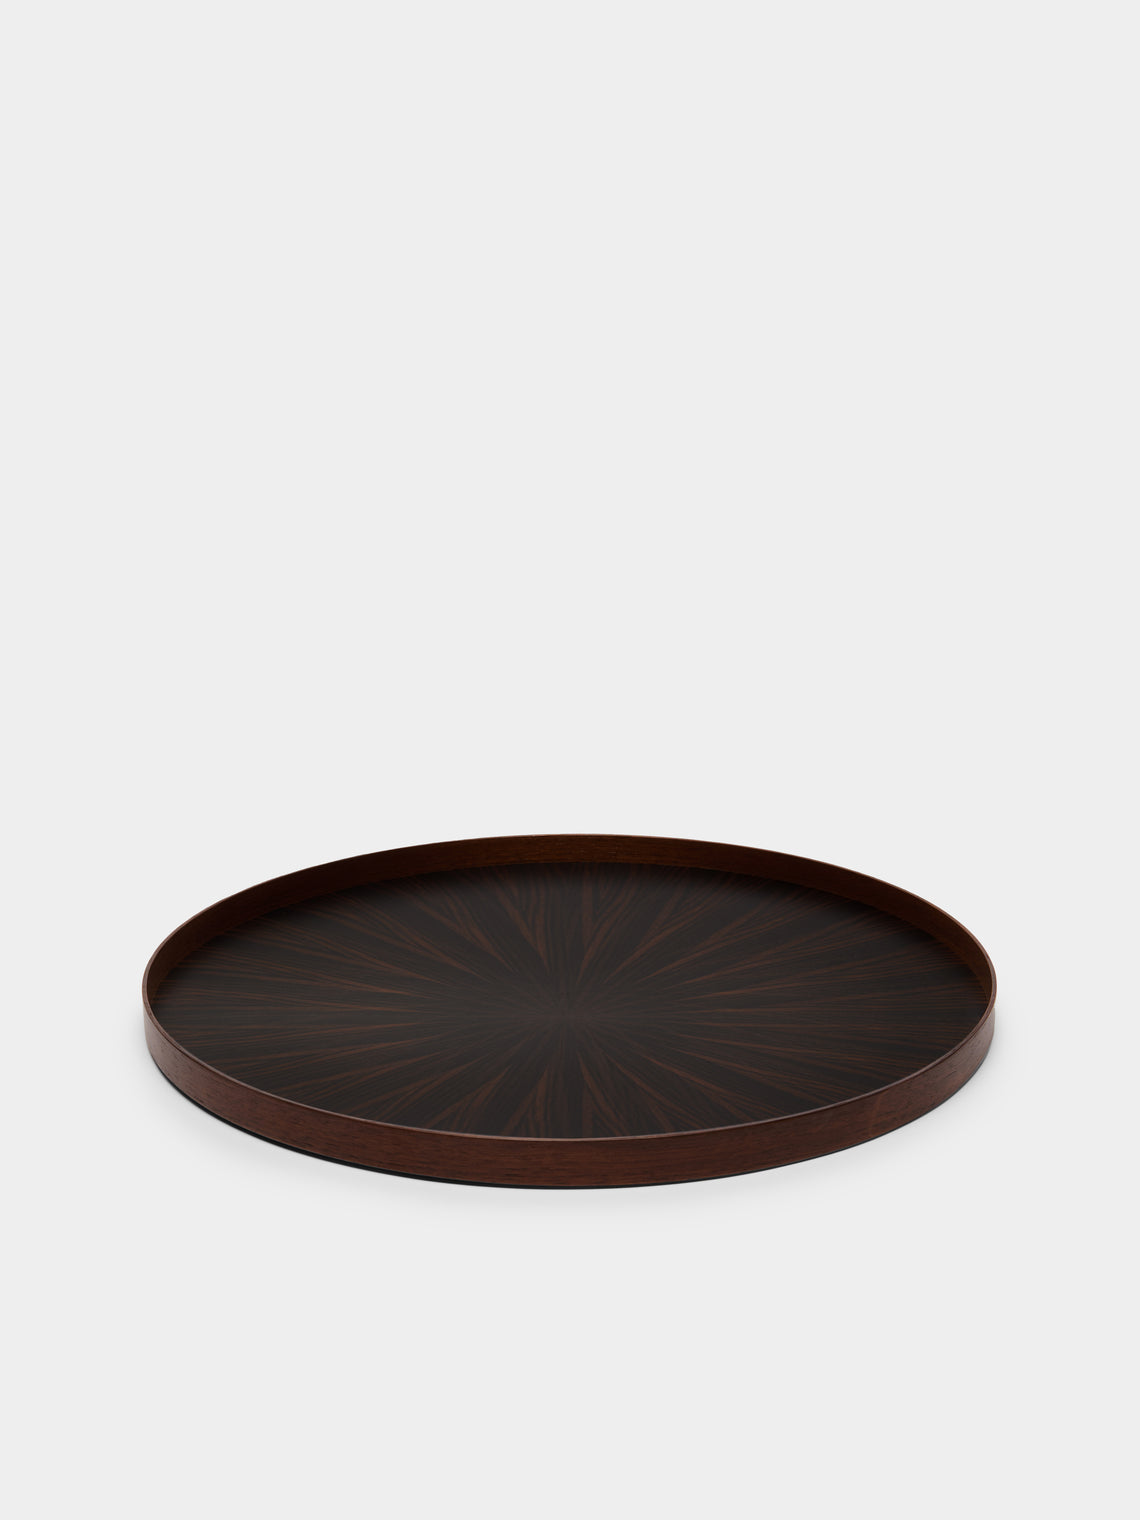 Mori Kougei - Ebony Round Wood Tray -  - ABASK